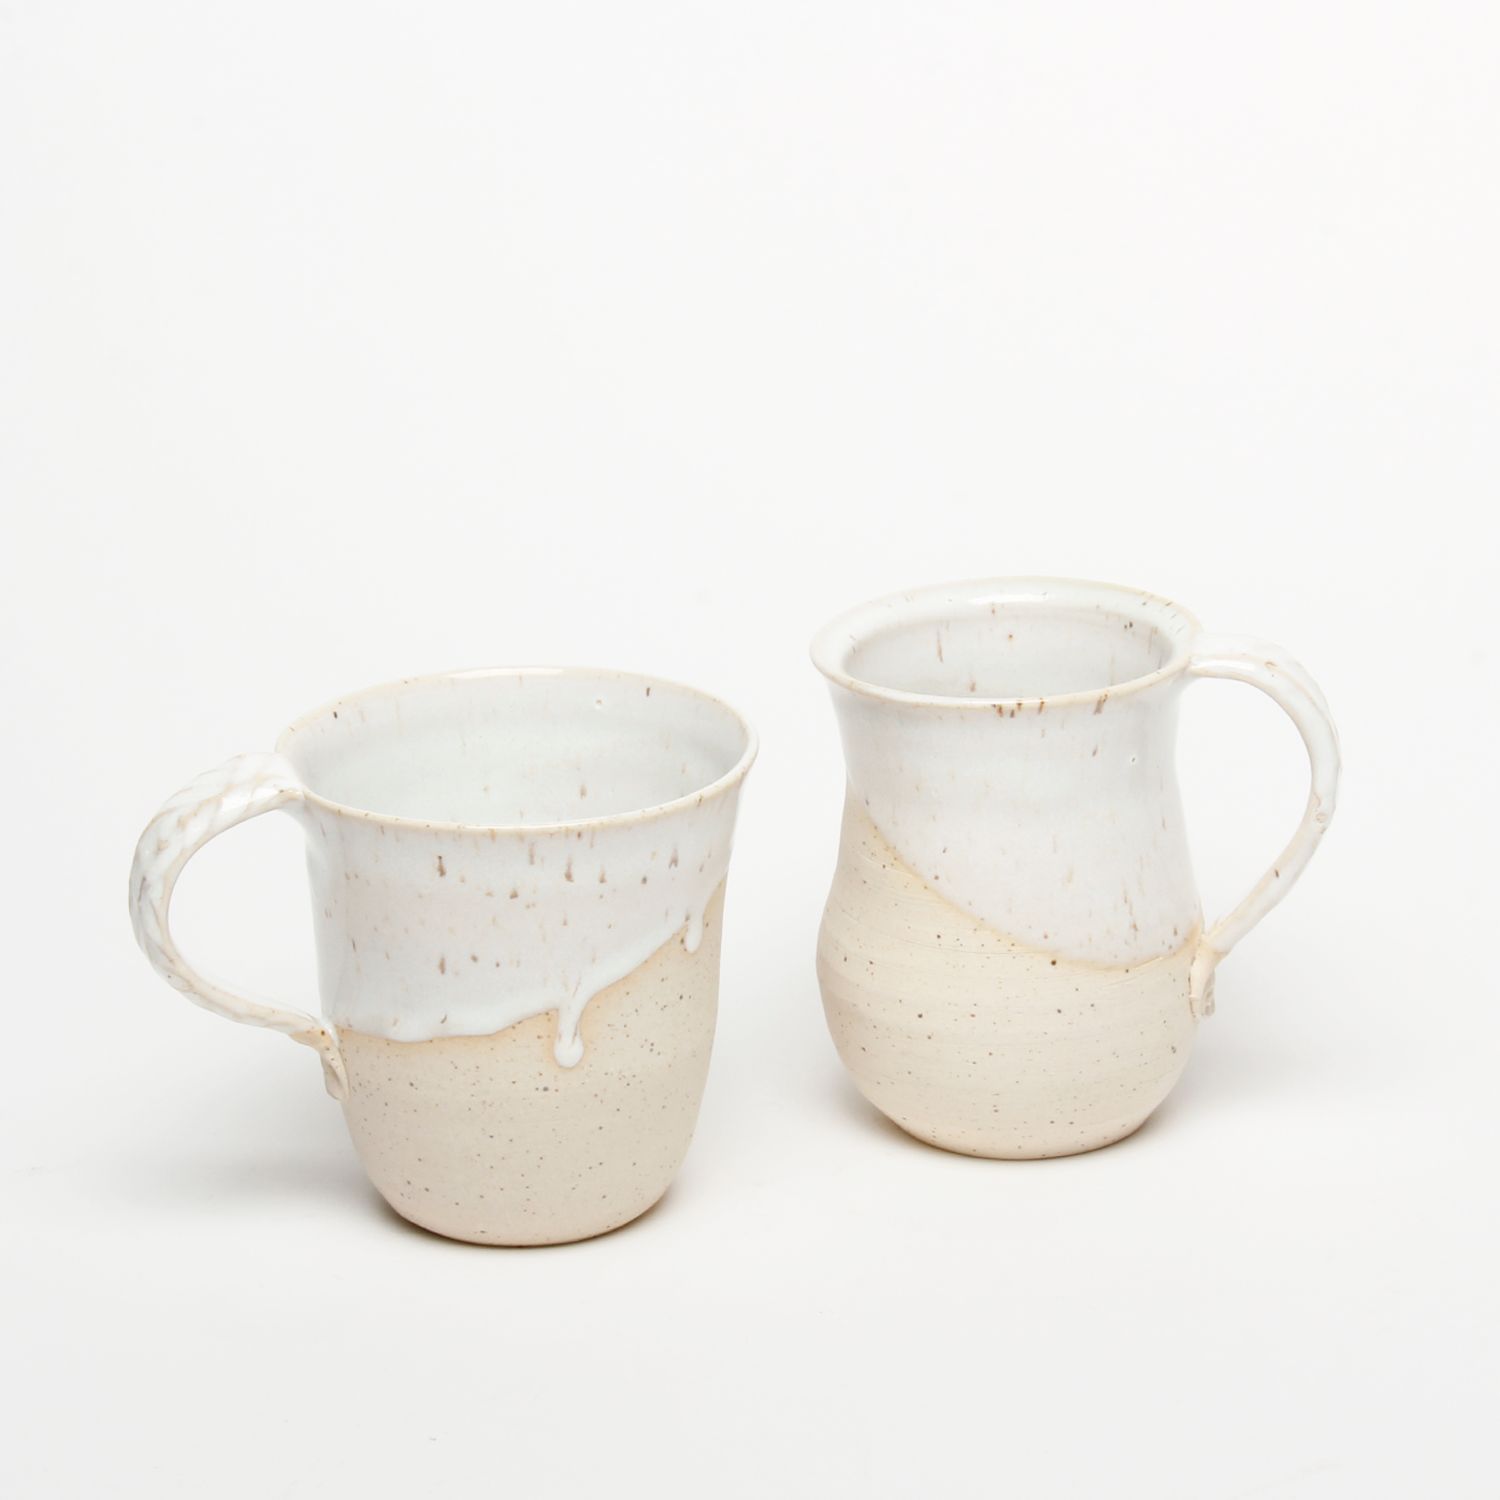 Catharina Goldnau: Medium Speckled White Mug Product Image 2 of 4